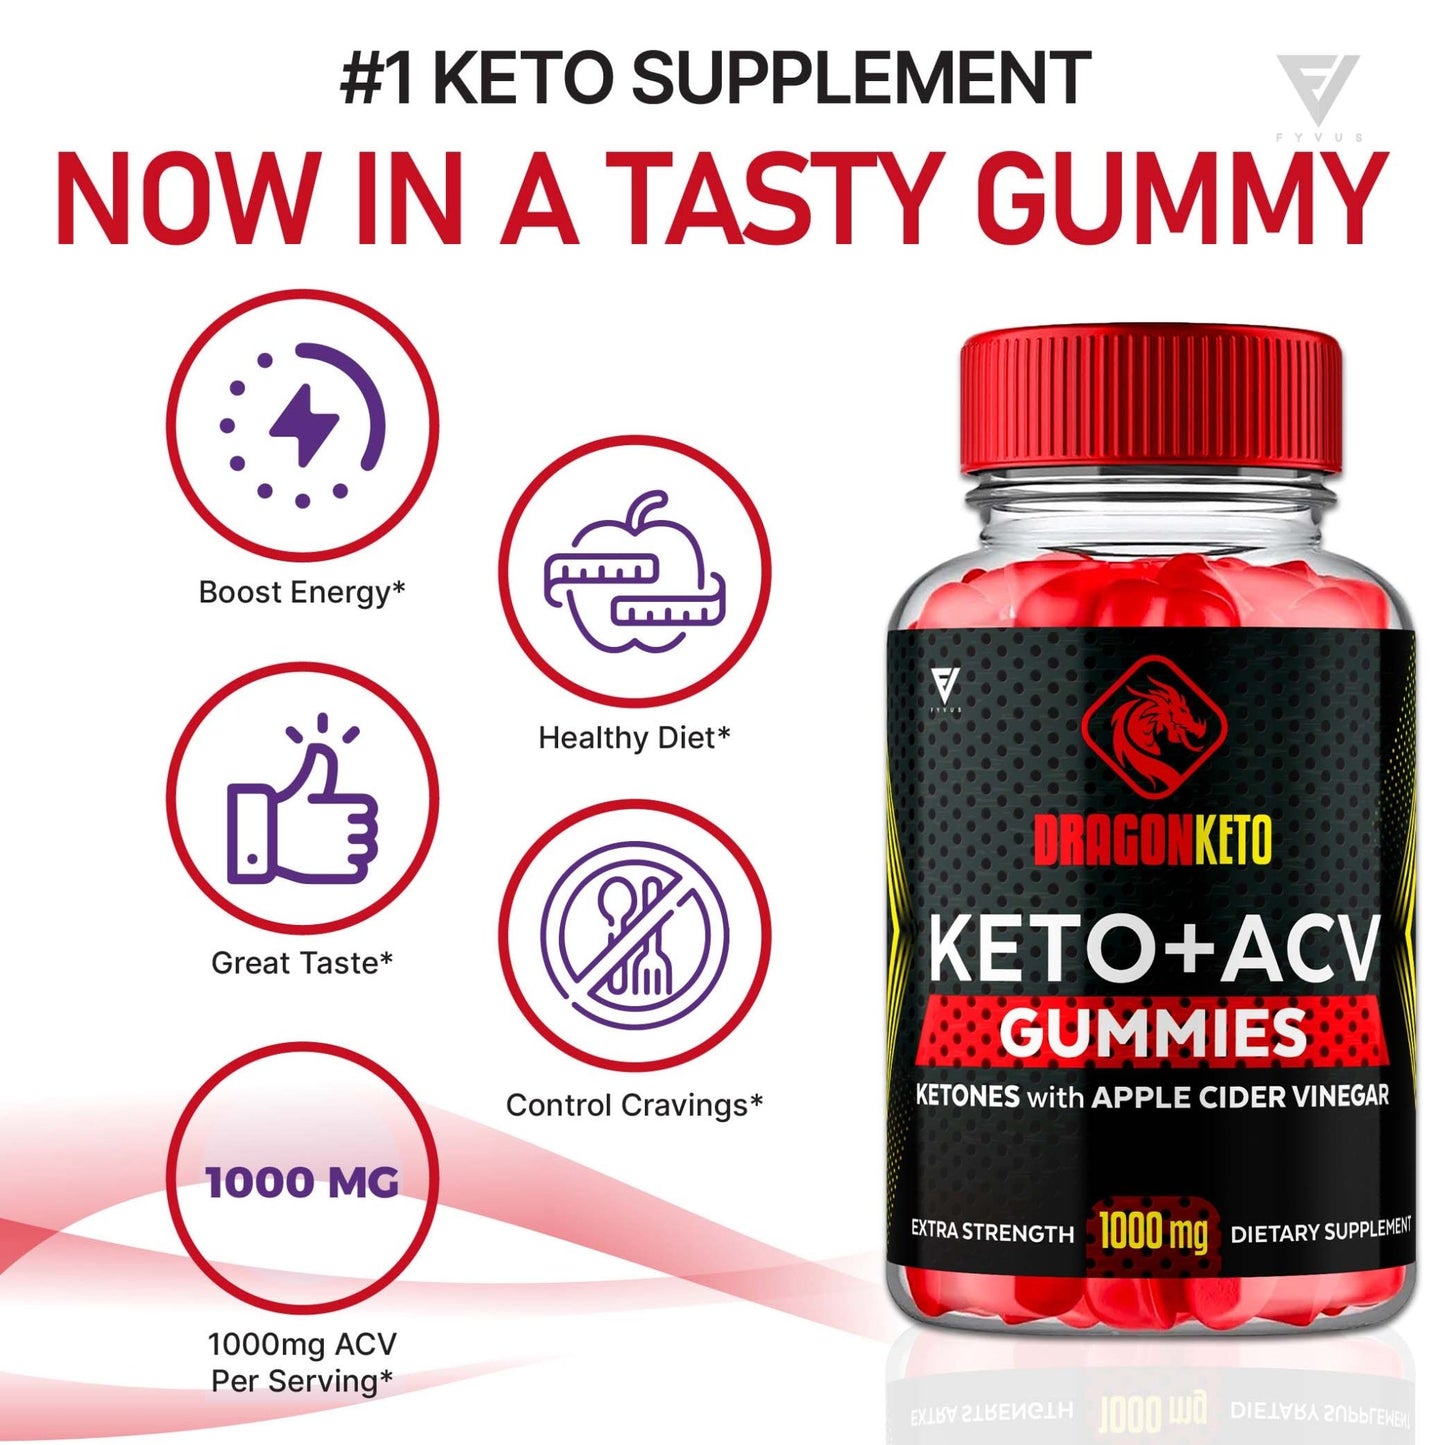 DragonKeto - Keto ACV Gummies - Vitamin Place